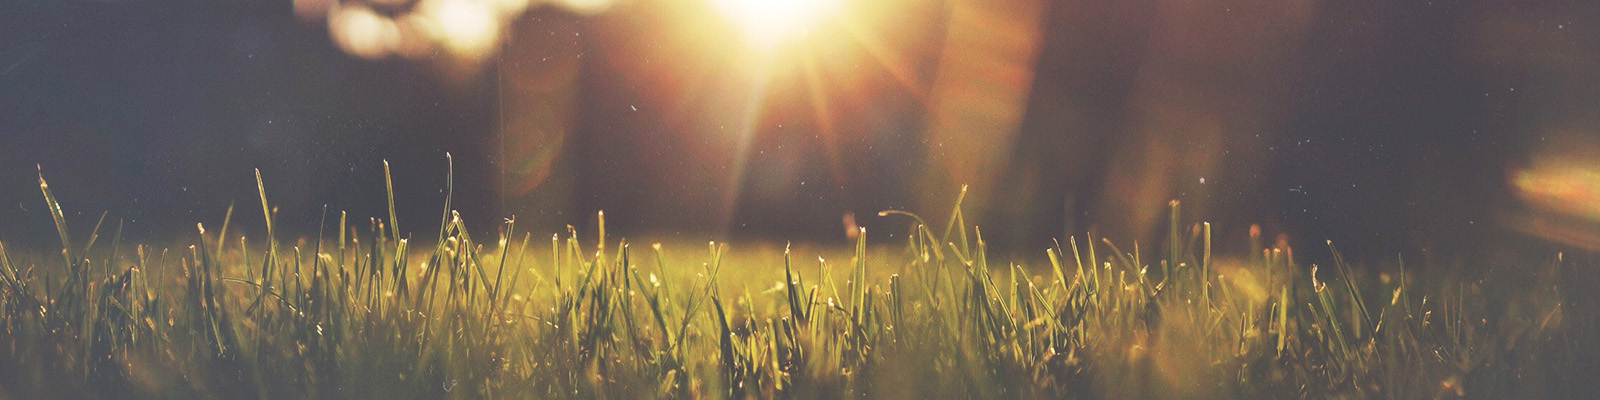 Summer grass with sunlight